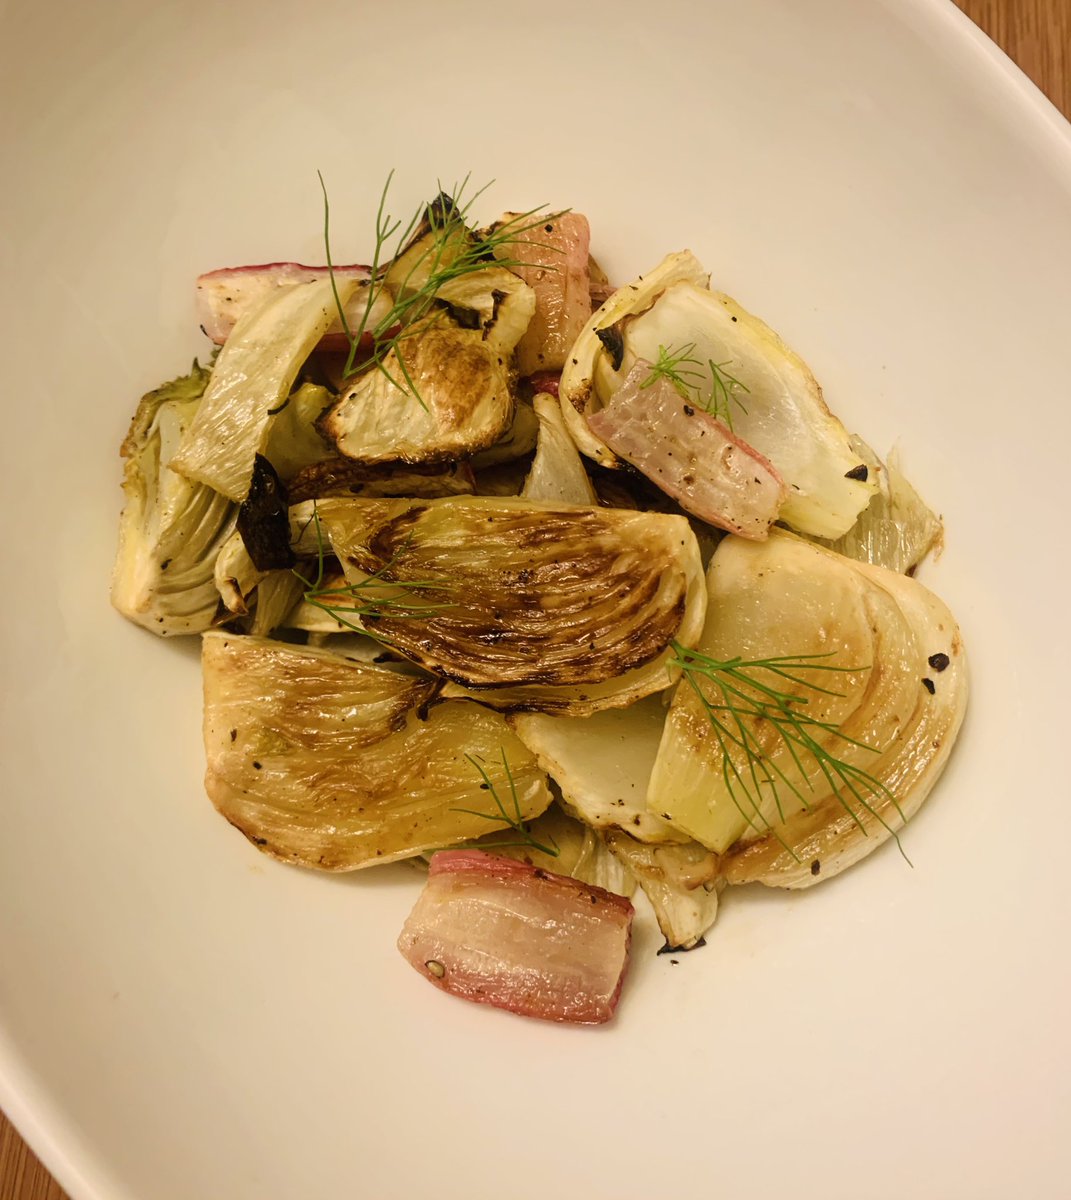 Side dish: Roasted fennel & radish #eatyourveggies #nofilter #ManicMonday